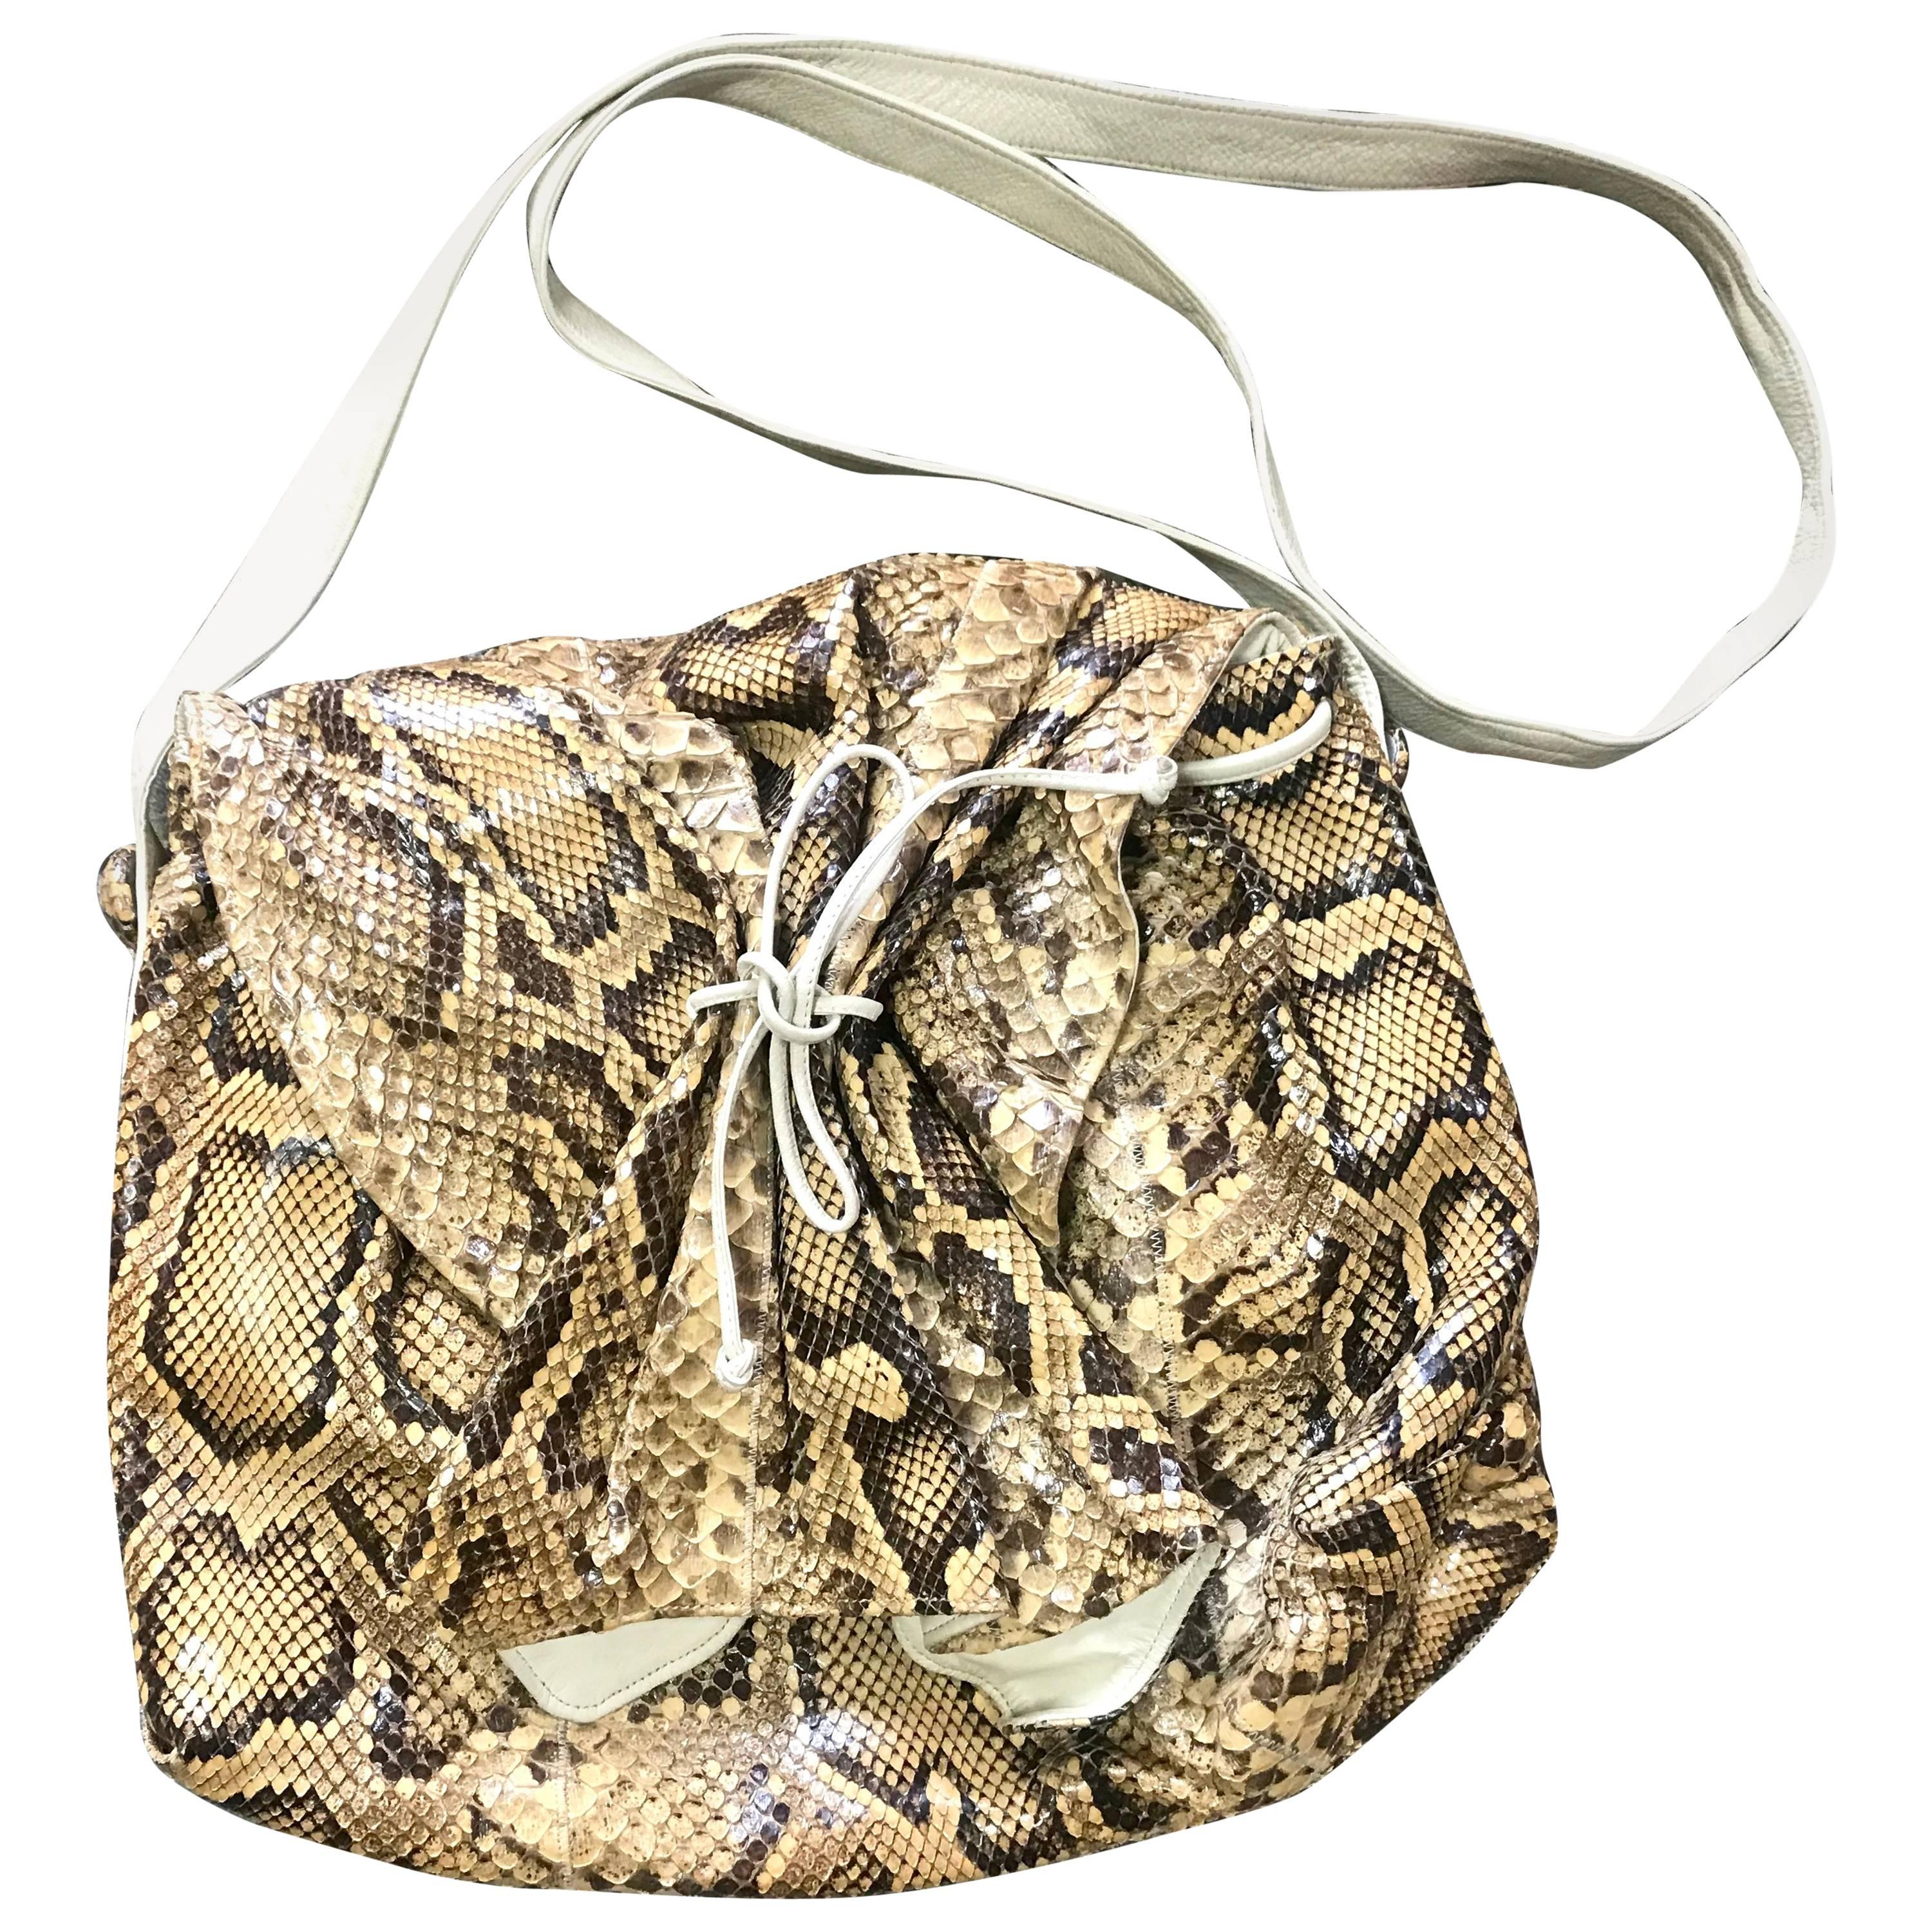 Vintage Carlos Falchi beige and brown snakeskin large messenger shoulder bag. For Sale